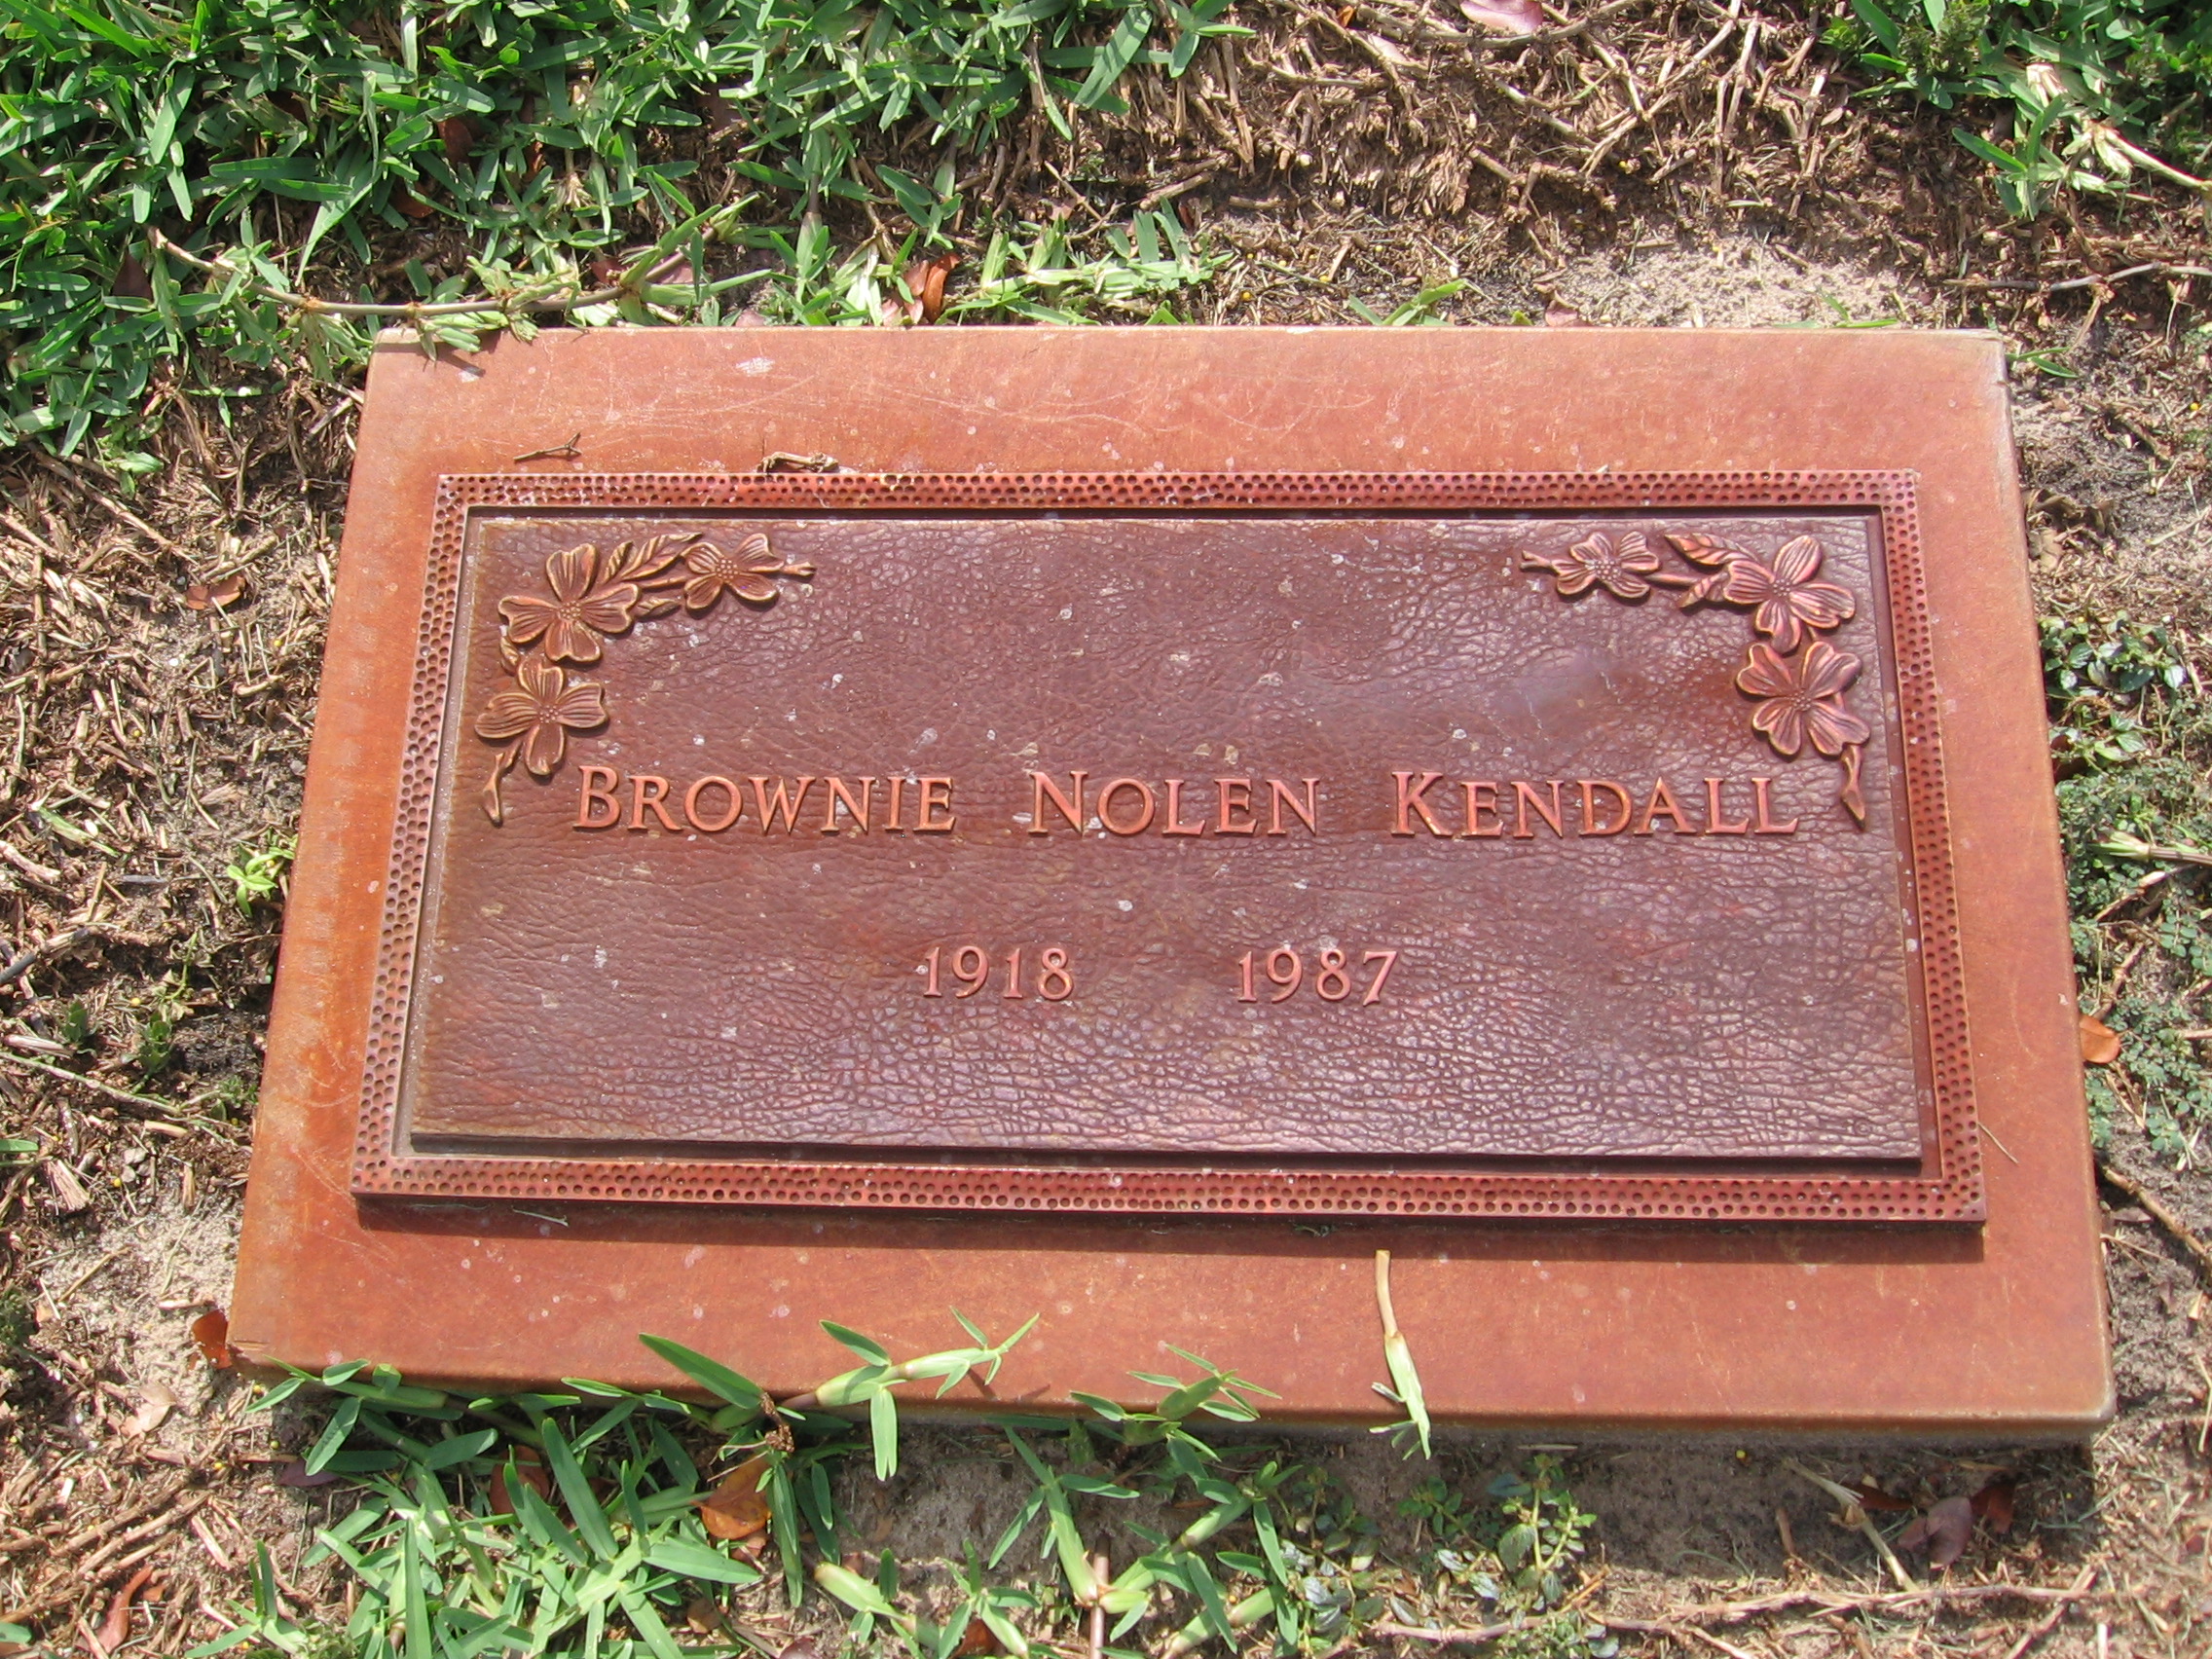 Brownie Nolen Kendall